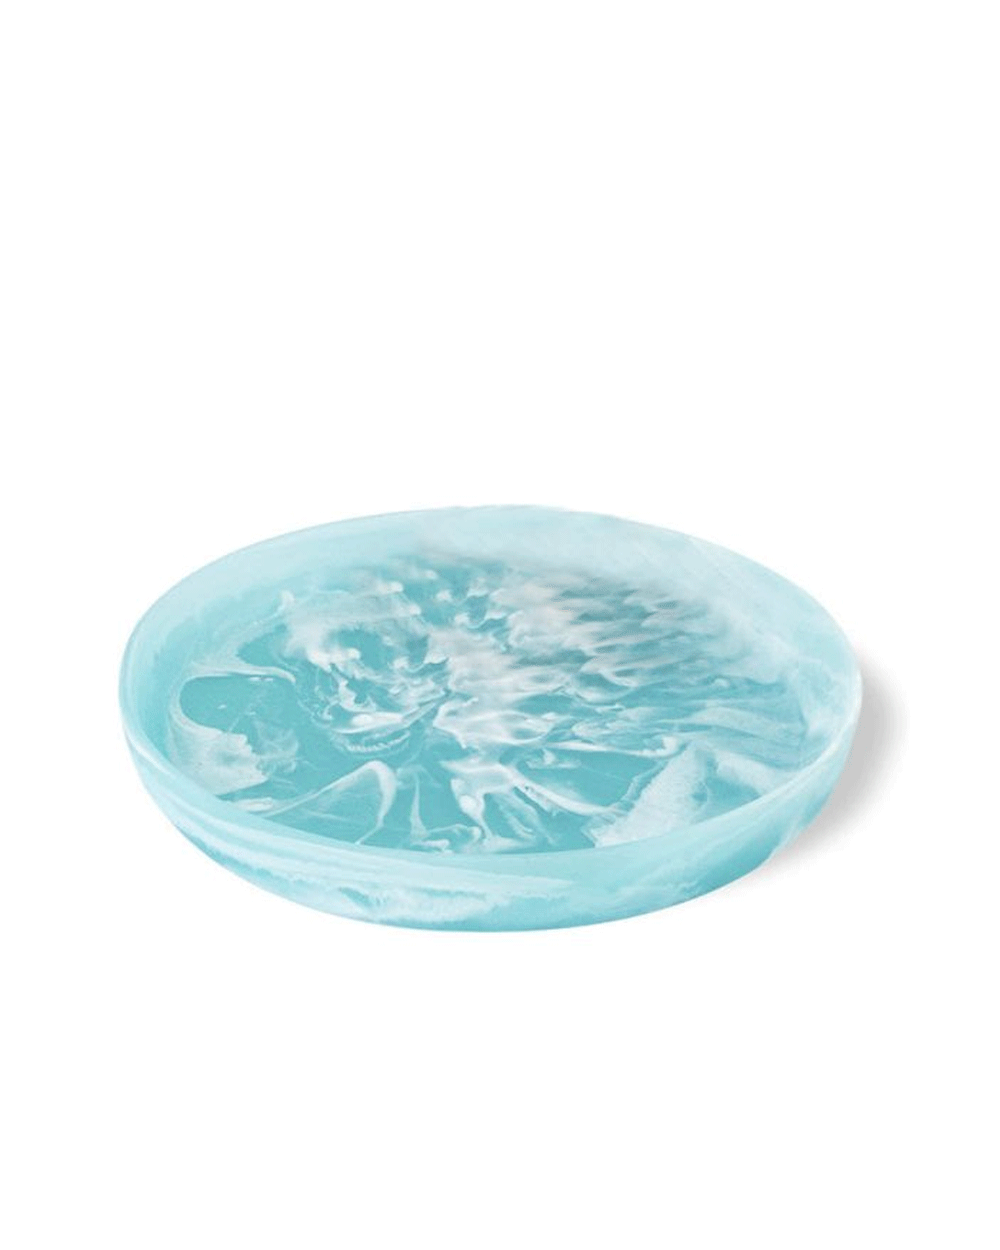 Medium Round Platter in Aqua Swirl